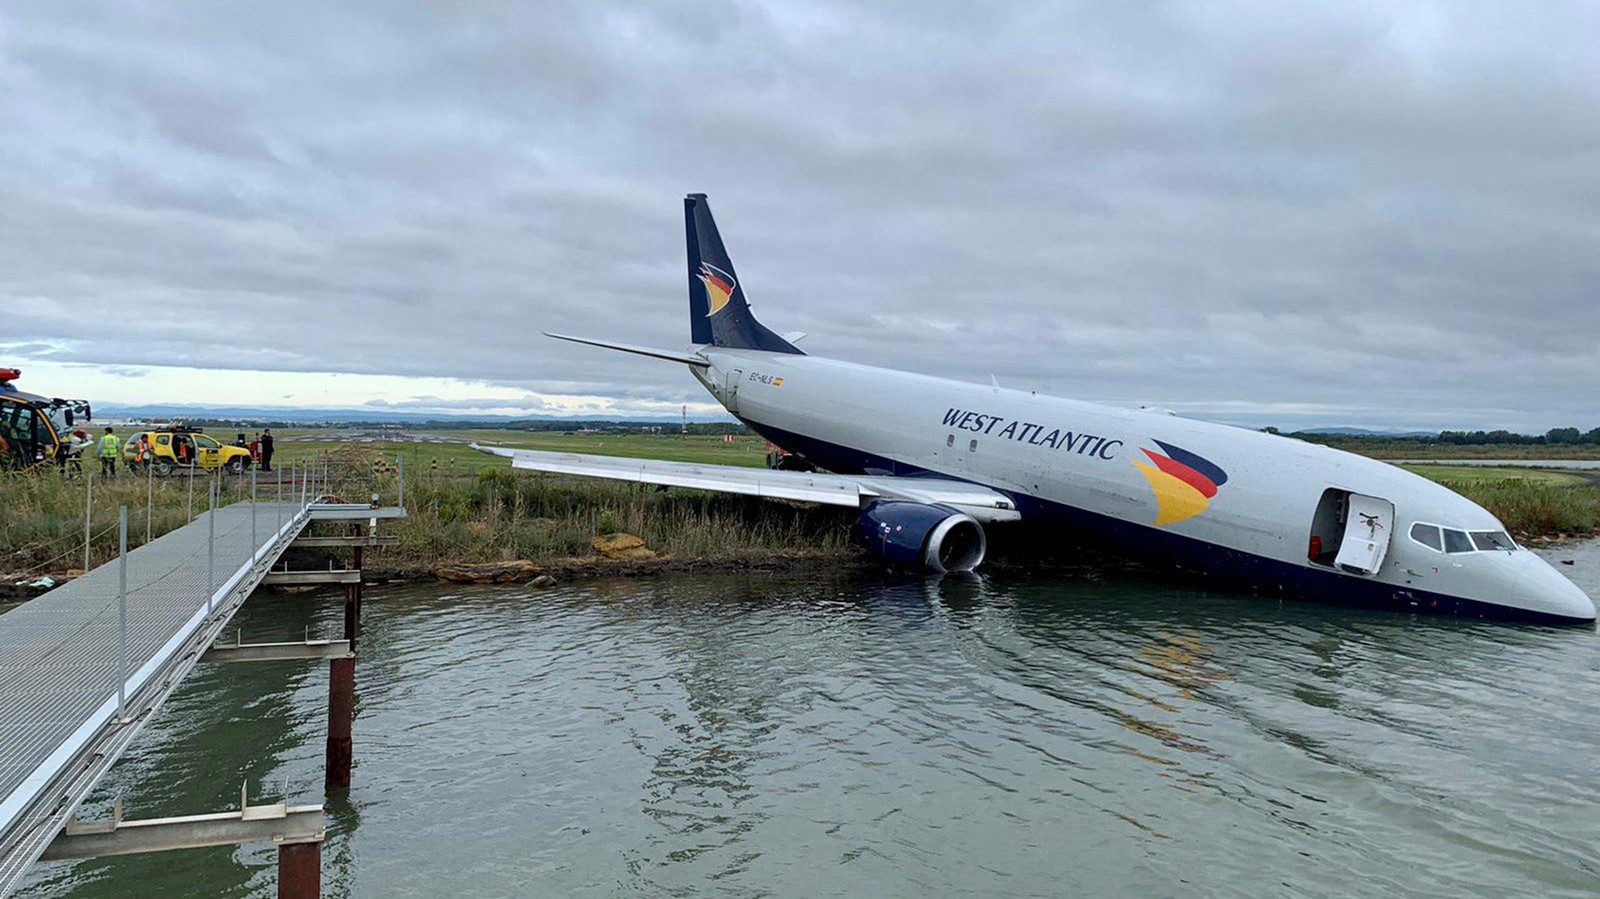 Vliegtuig mist landingsbaan en komt in meer terecht, luchthaven van Montepellier tijdelijk gesloten.